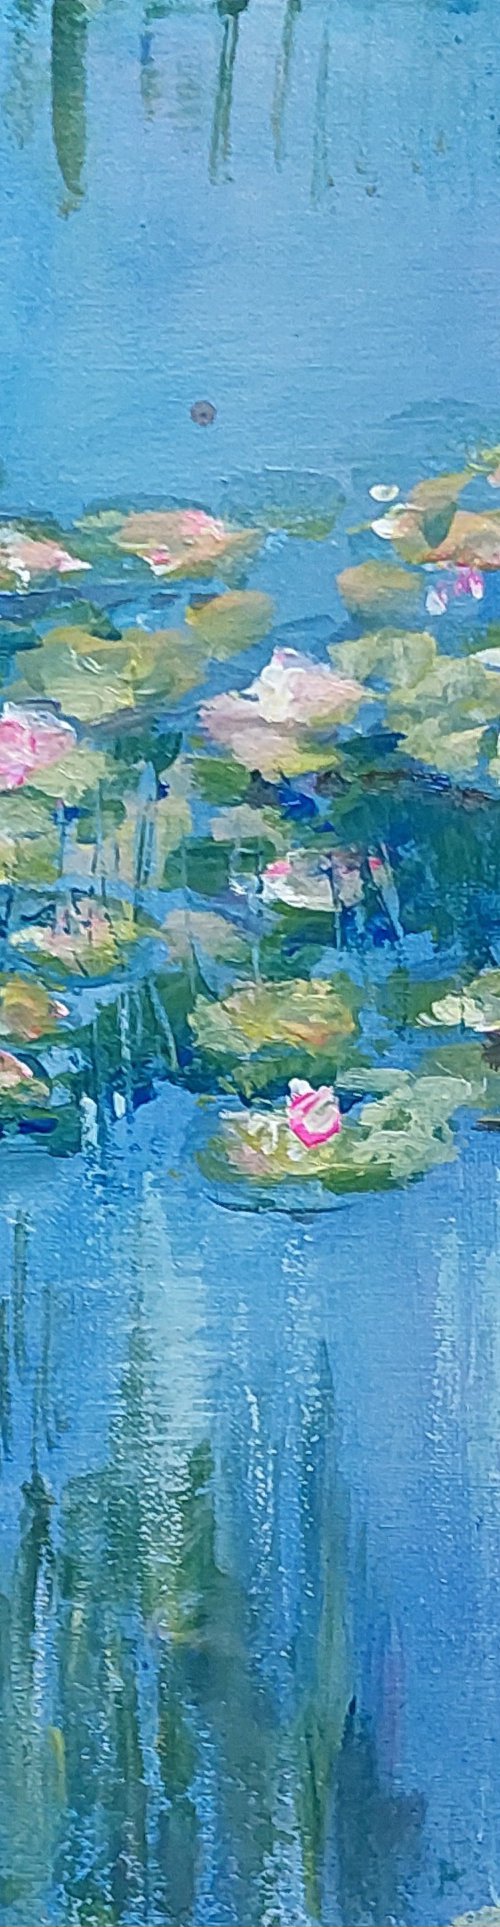 Waterlelies of Monet by Els Driesen